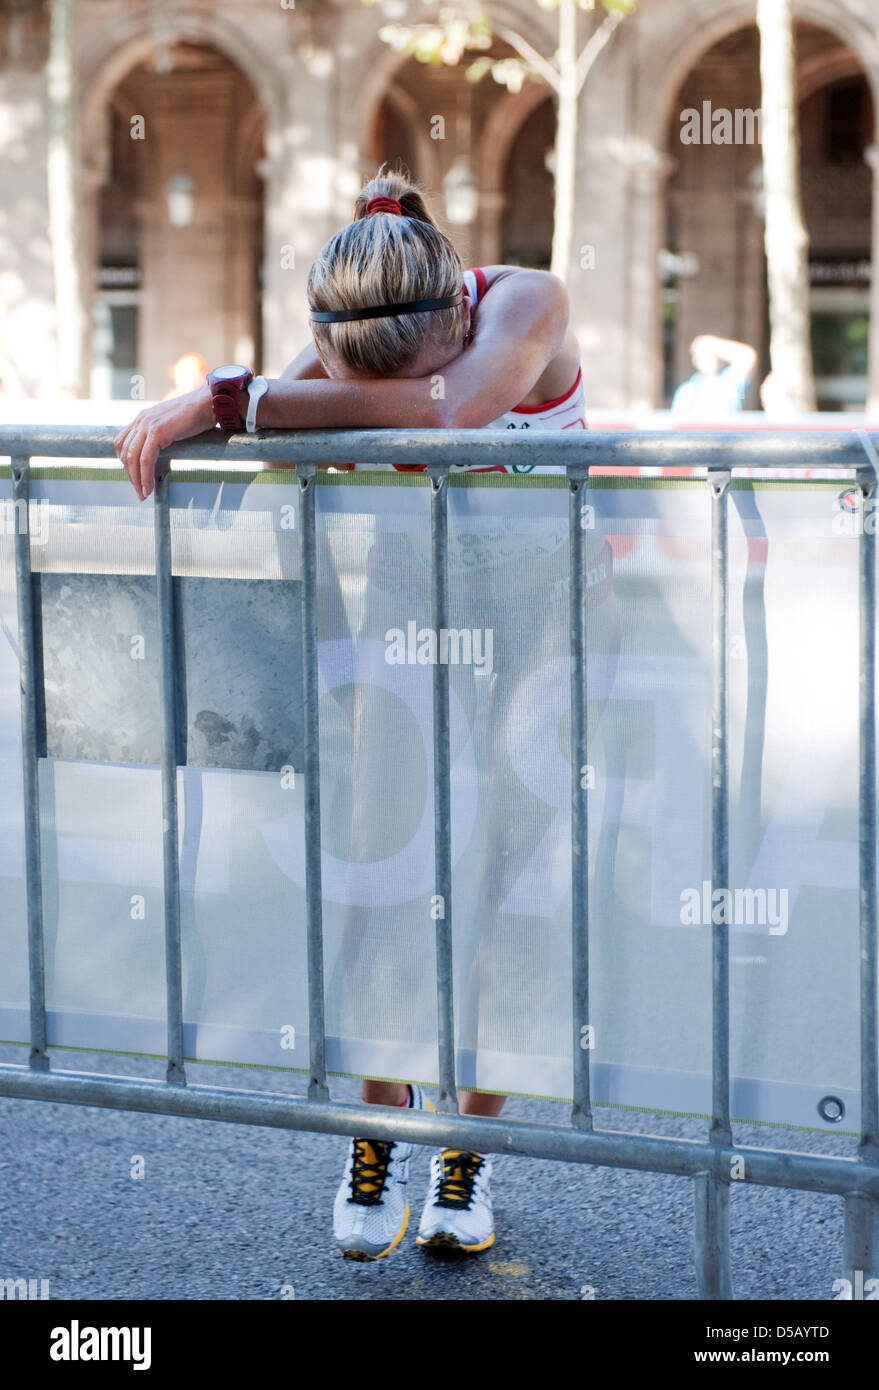 L'athlète espagnole Maria Vasco se penche épuisé contre un obstacle après une crampe dans le pied l'a forcée à quitter la course chez les femmes de la marche athlétique à concurrence de 20 kilomètres l'athlétisme champion dans Barcelone, Espagne, 28 juillet 2010. Foto : BERND THISSEN Banque D'Images